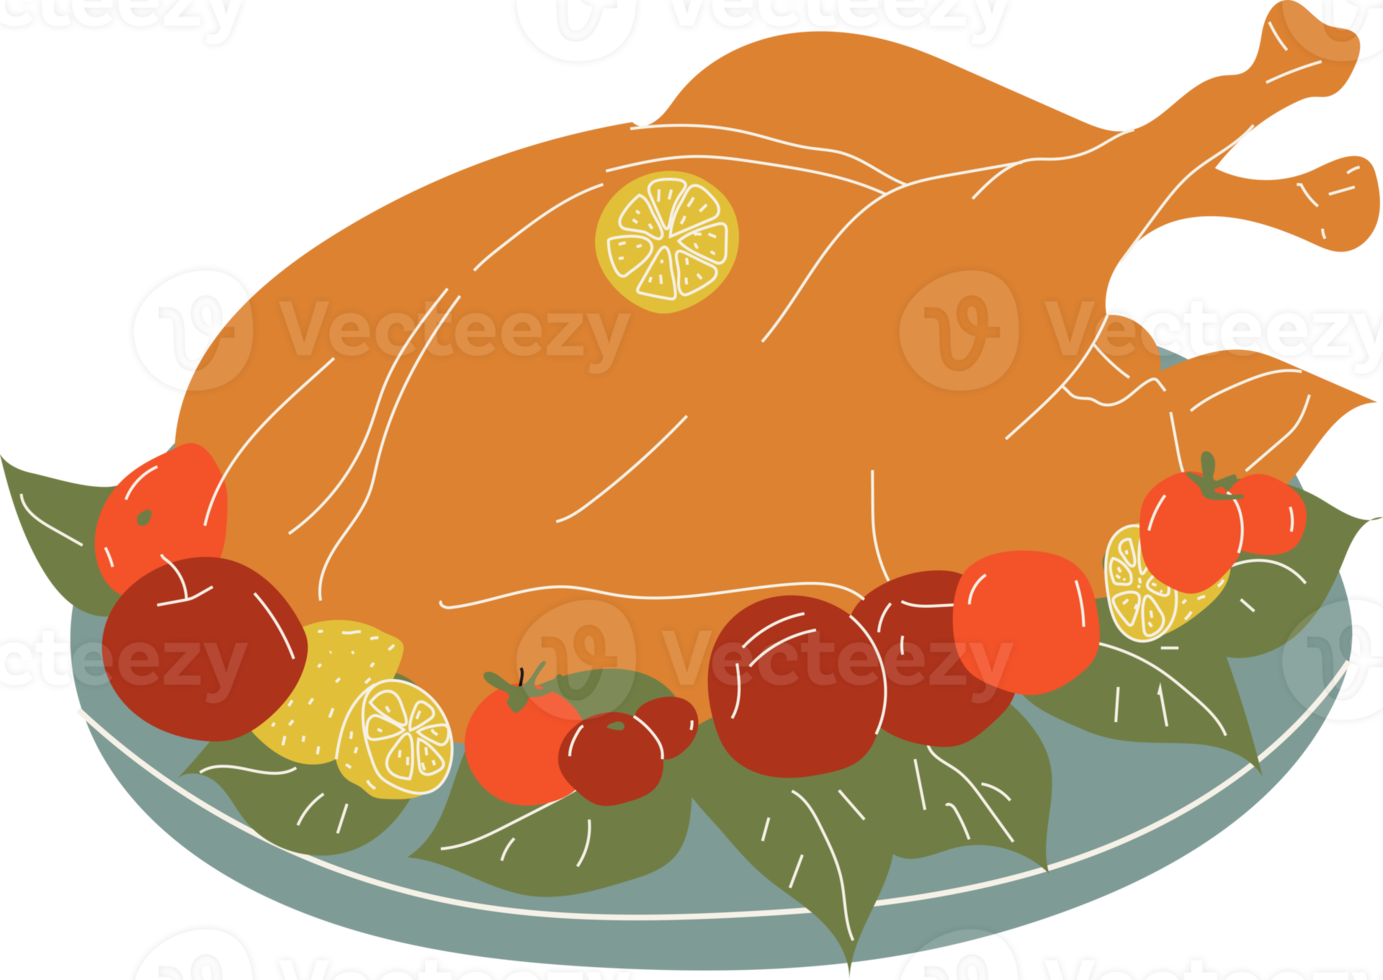 illustration de la dinde cuite au four pour le jour de thanksgiving. dans le style de dessin animé png. tous les éléments sont isolés png